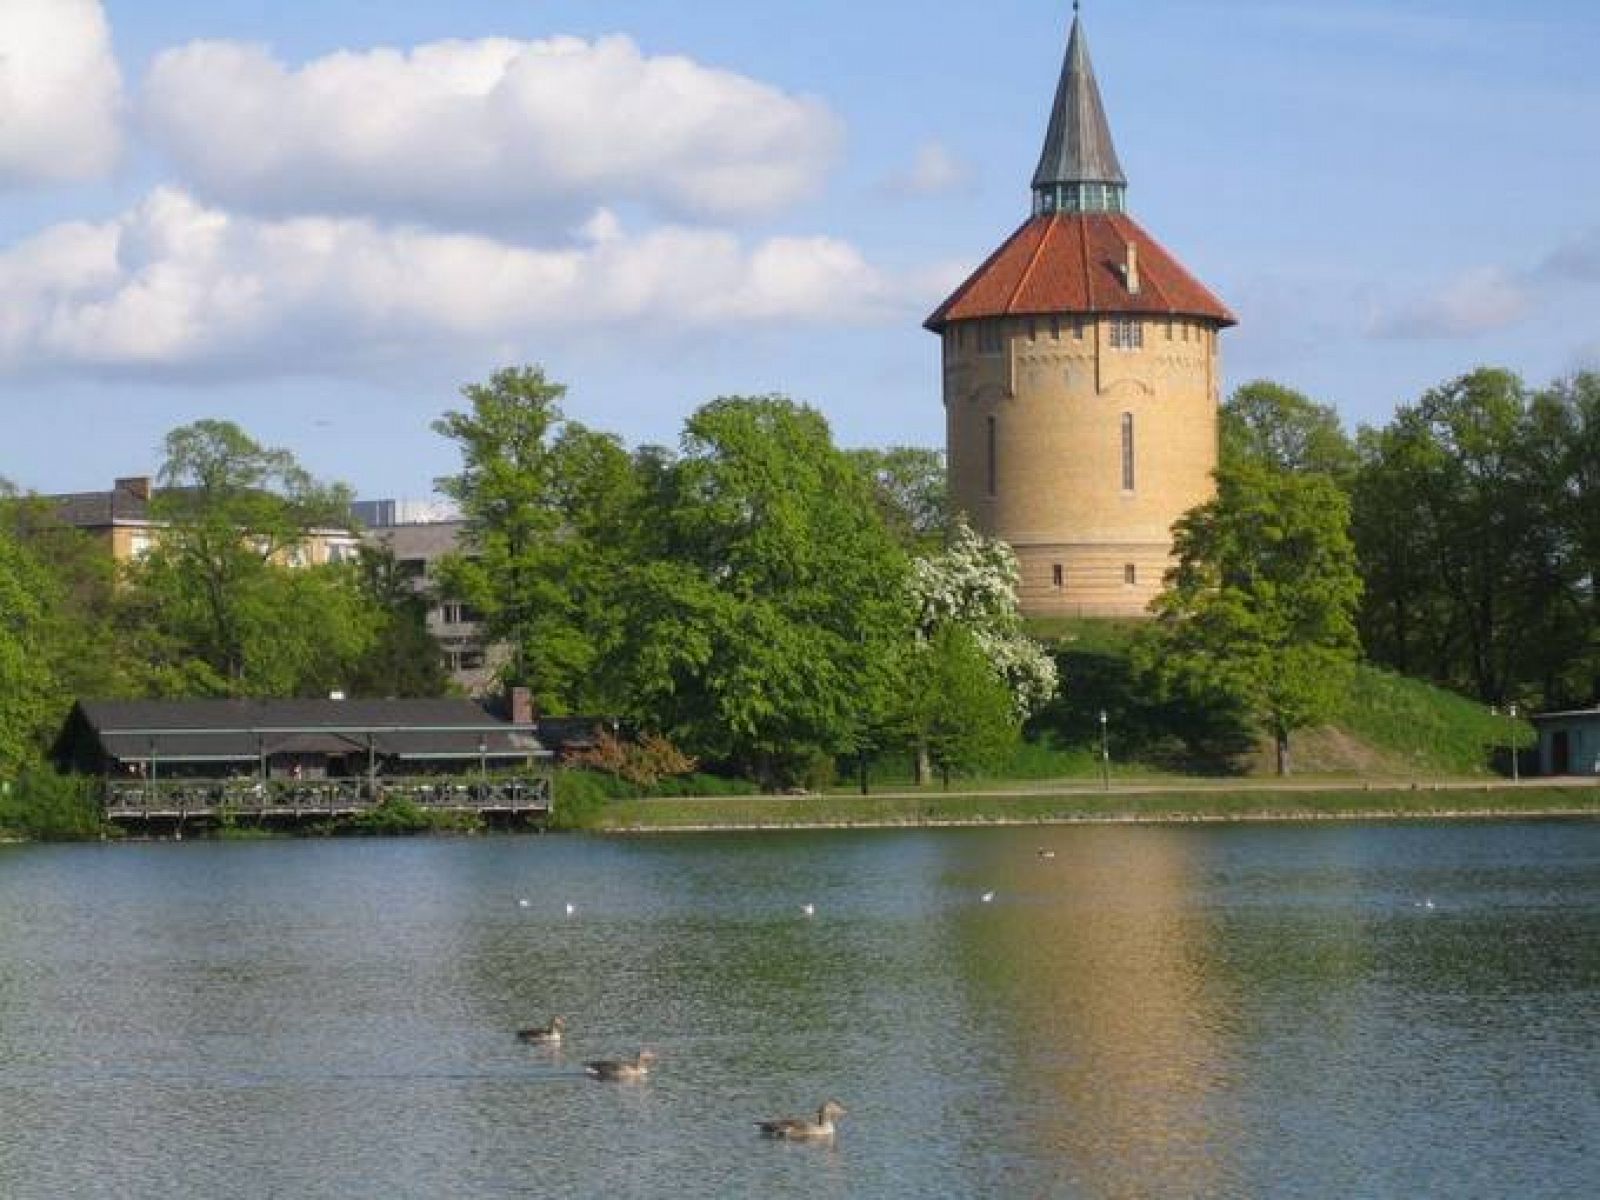  Torre de agua en el Parque Pildamm de Malmö.